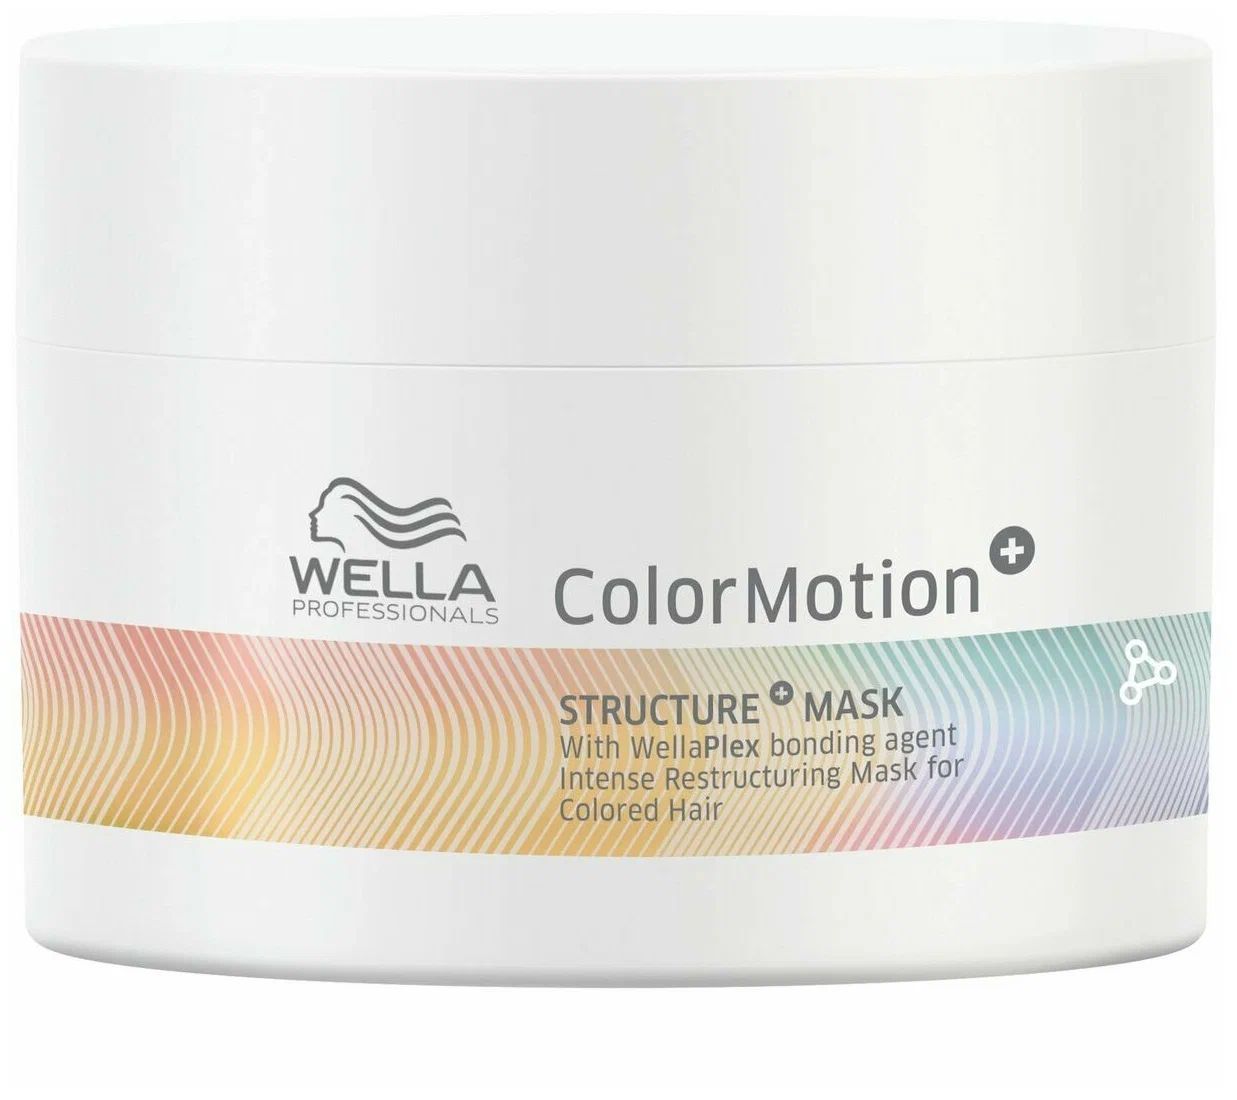 Маска Wella Color Motion Structure Mask для интенсивного восстановления волос 150 мл маска для глубокого восстановления структуры волос structure restoring mask